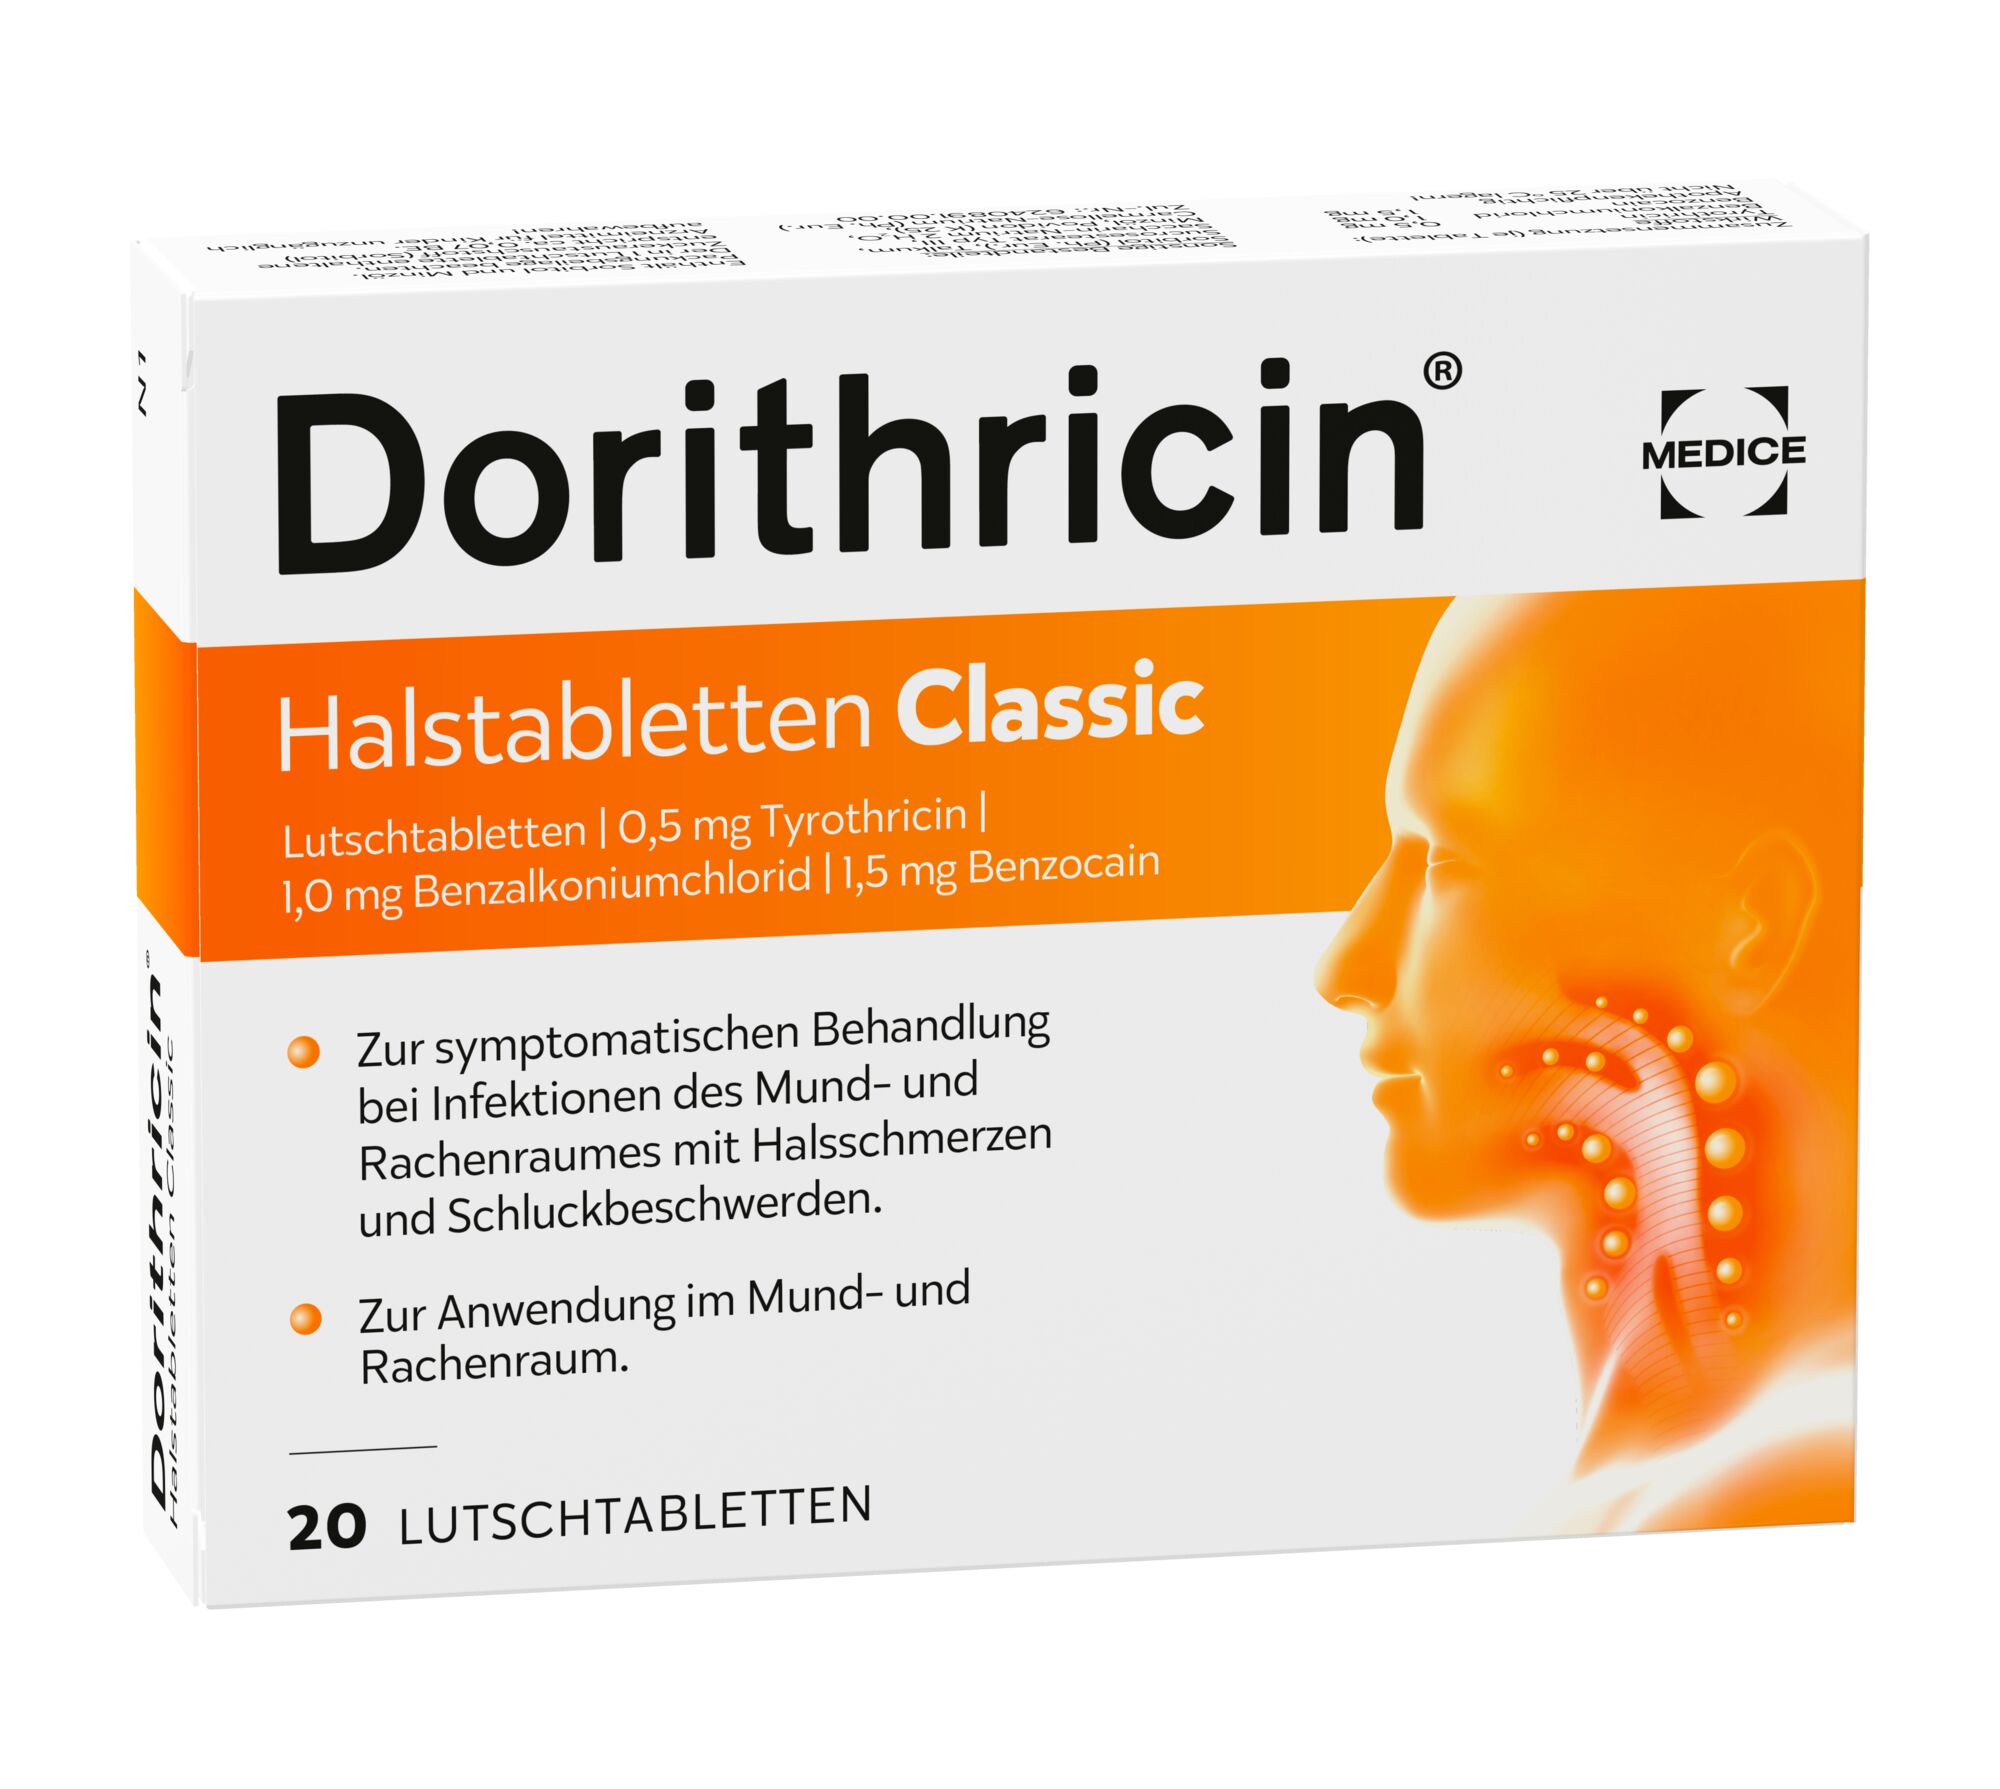 Dorithricin Halstabletten Classic (20 Stk)